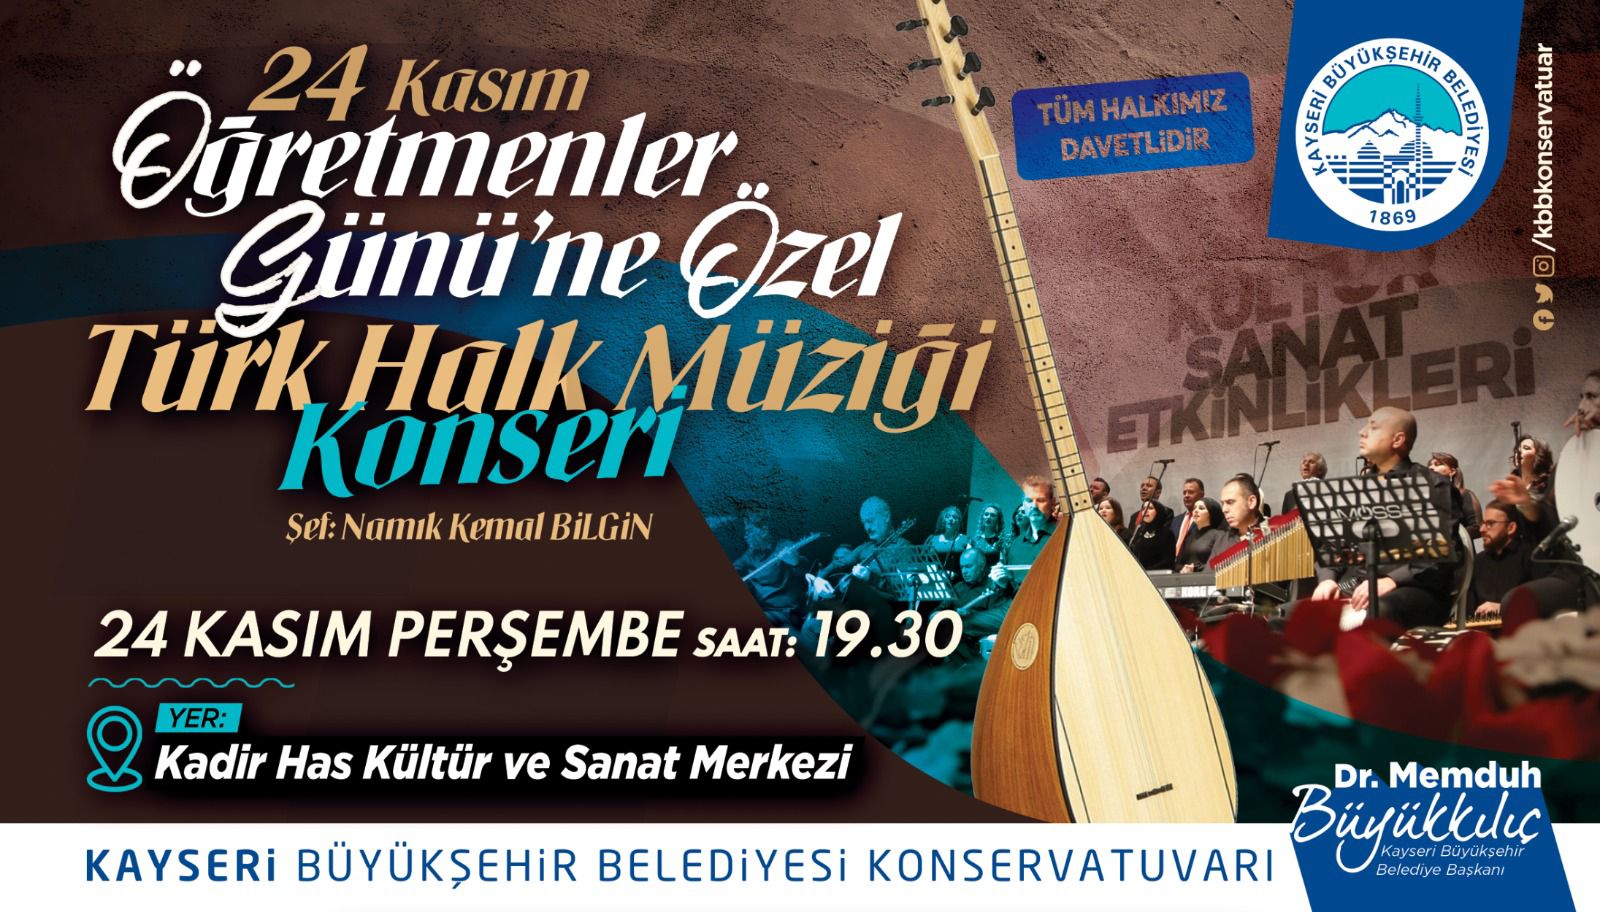 24 Kasım Öğretmenler Gününe Özel Türk Halk Müziği Konseri